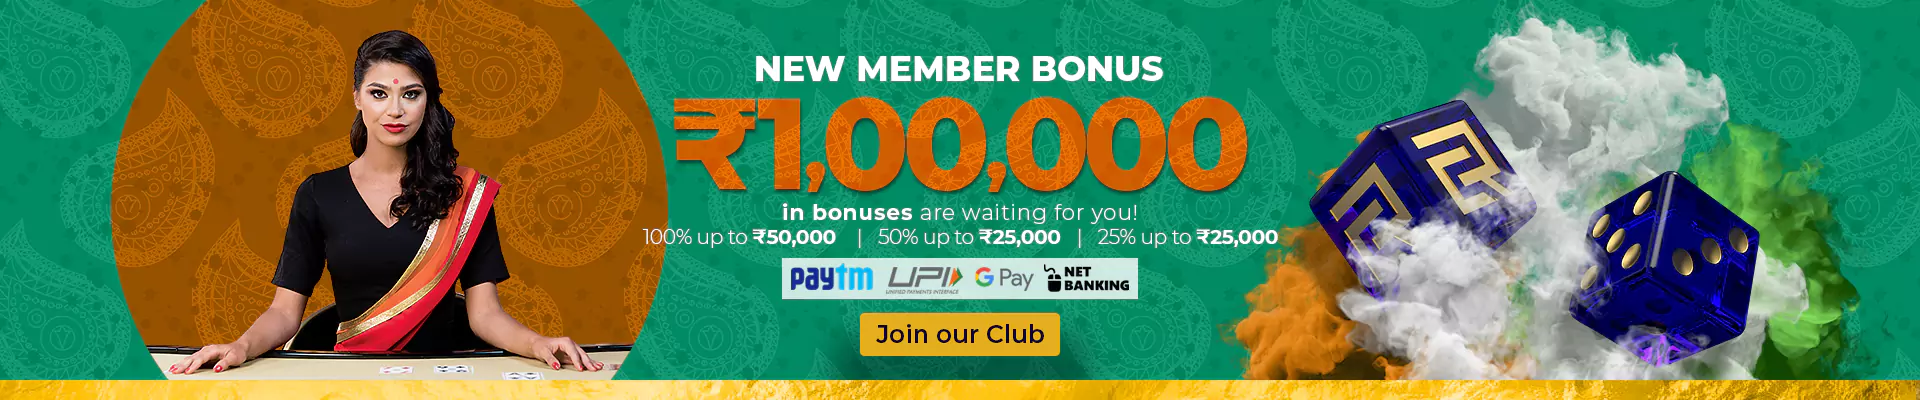 club-riches-banner-1920x400-en-new-member-bonus-INR-anon